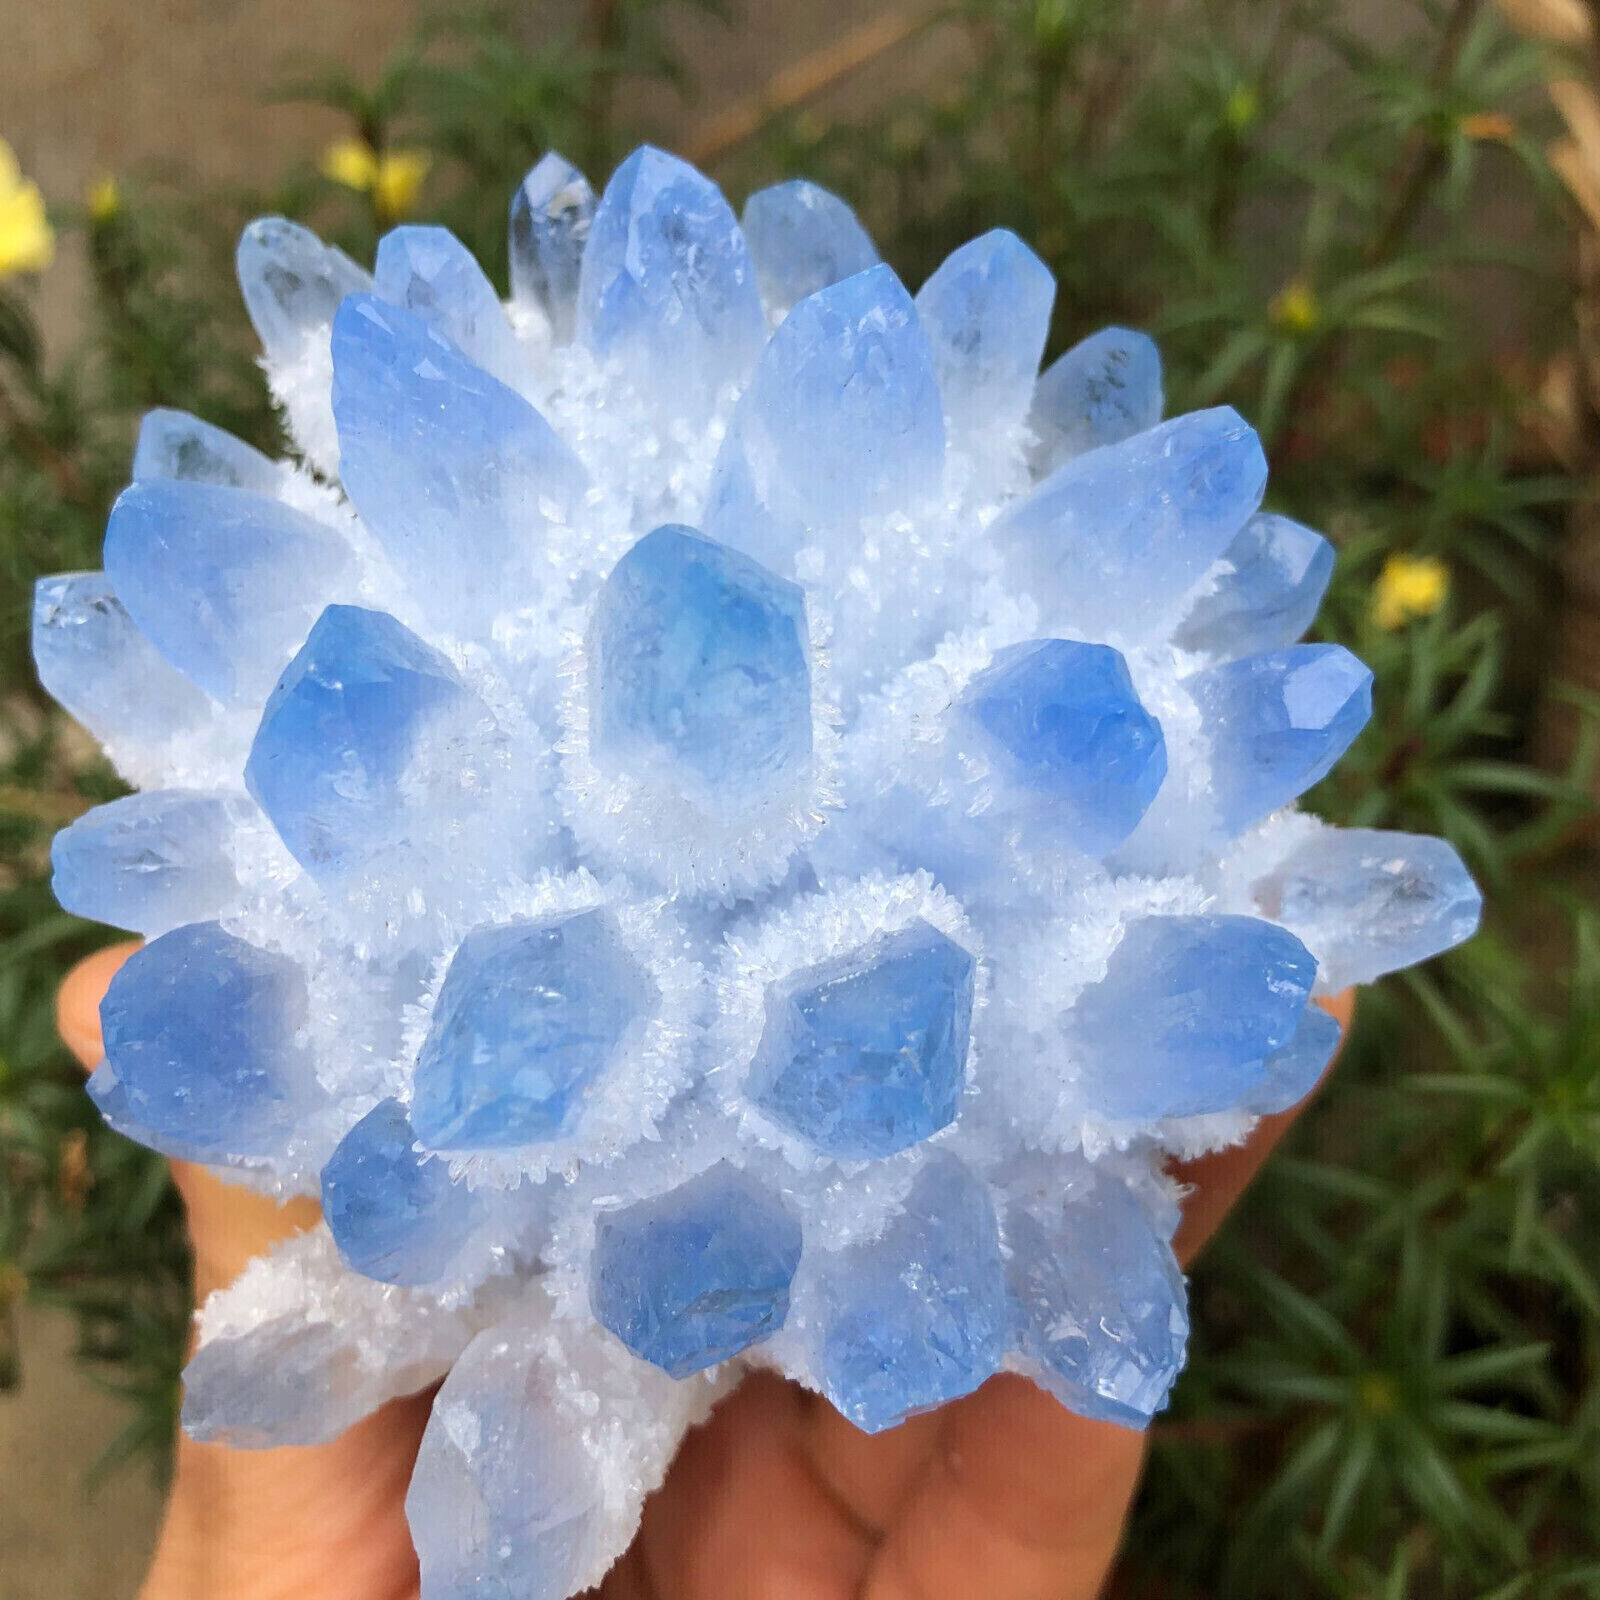 300g+ New Find Blue Phantom Quartz Crystal Cluster Mineral Specimen Gem